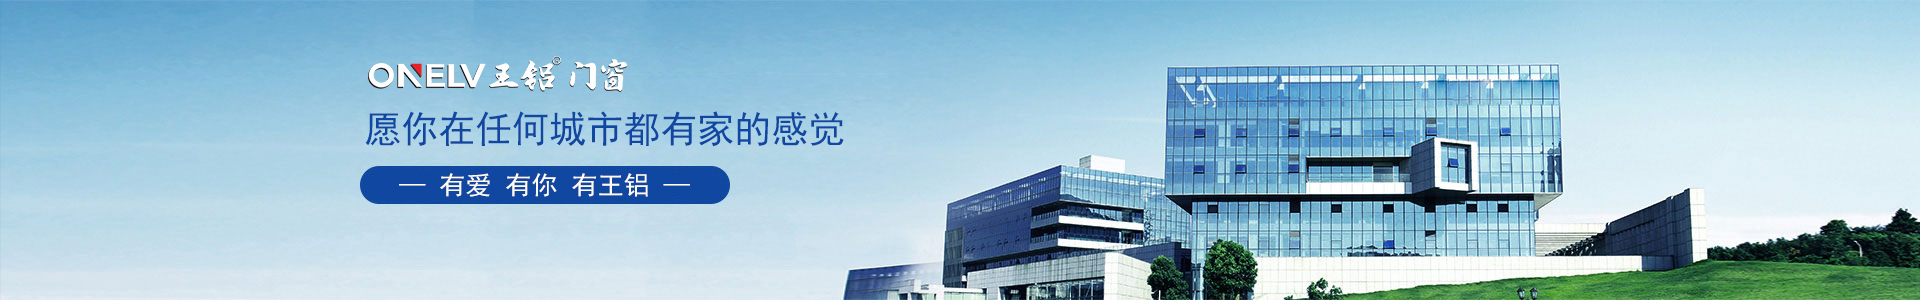 产品中心-yh86银河国际官方网站【企业官网】